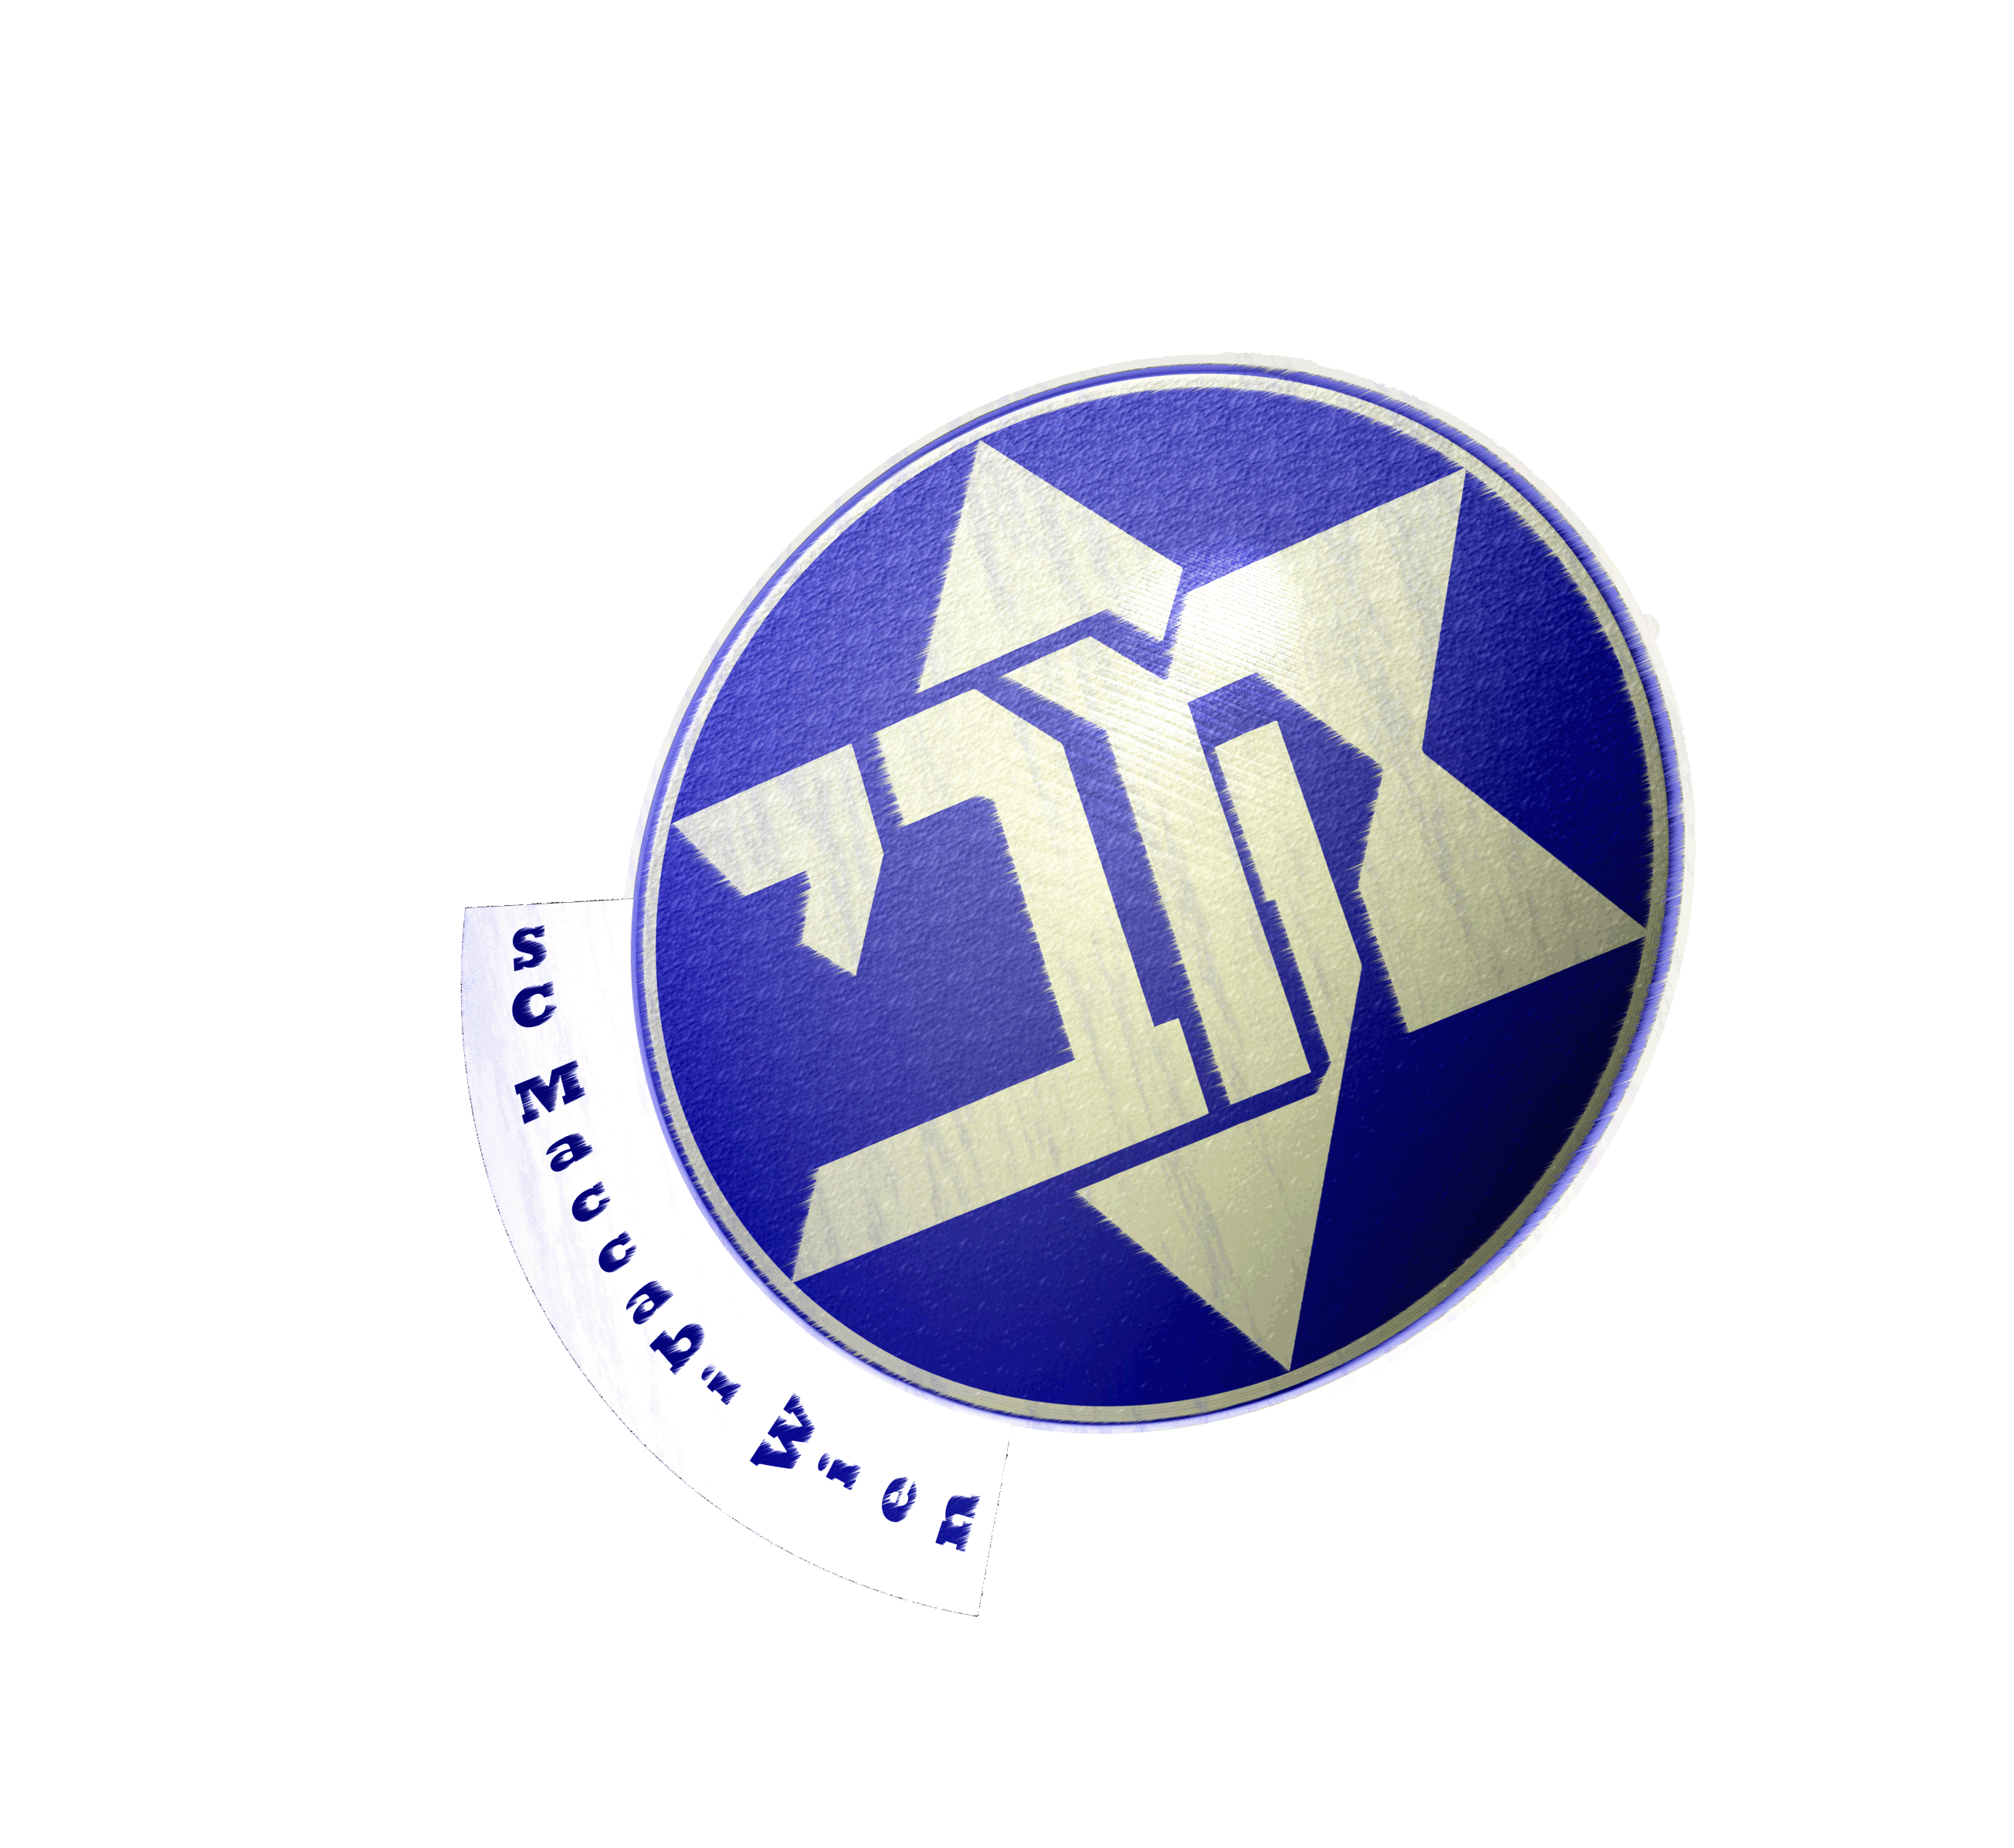 Maccabi_Logo